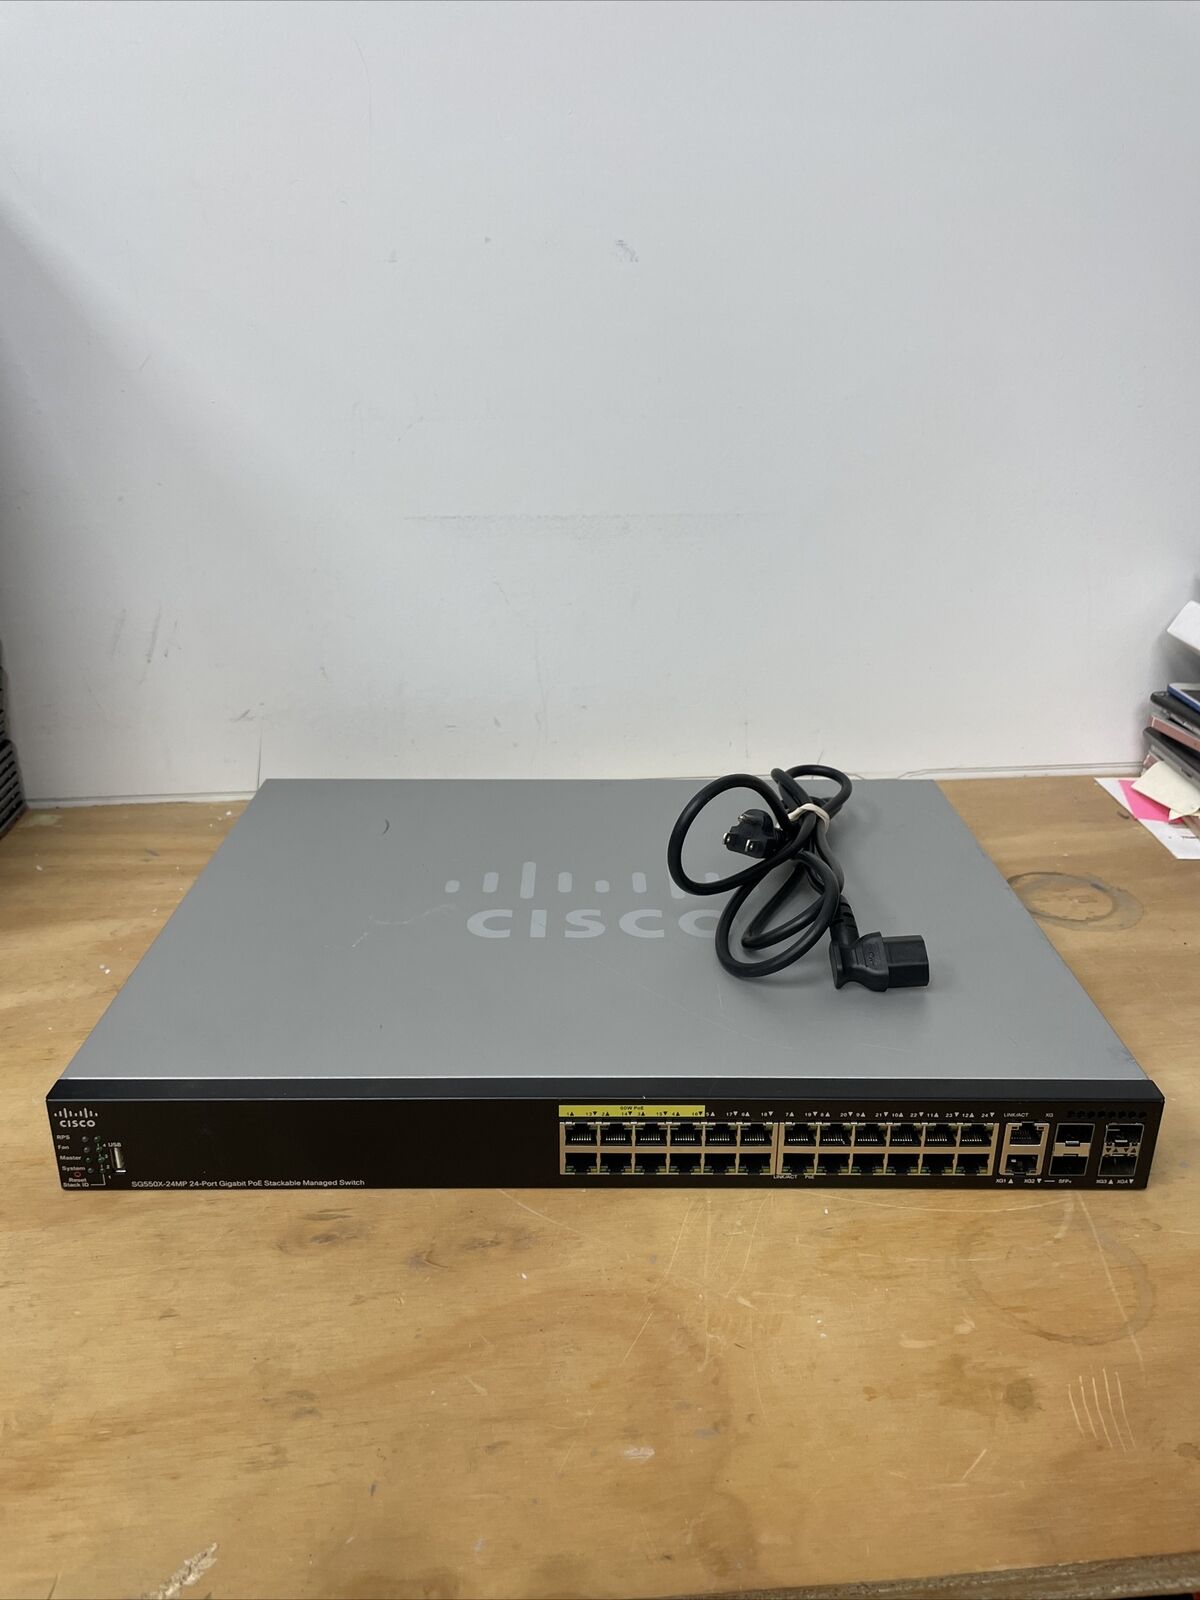 Cisco SG550X-24MP-K9 24 x 10/100/1000 PoE+ ports with 382W power budget